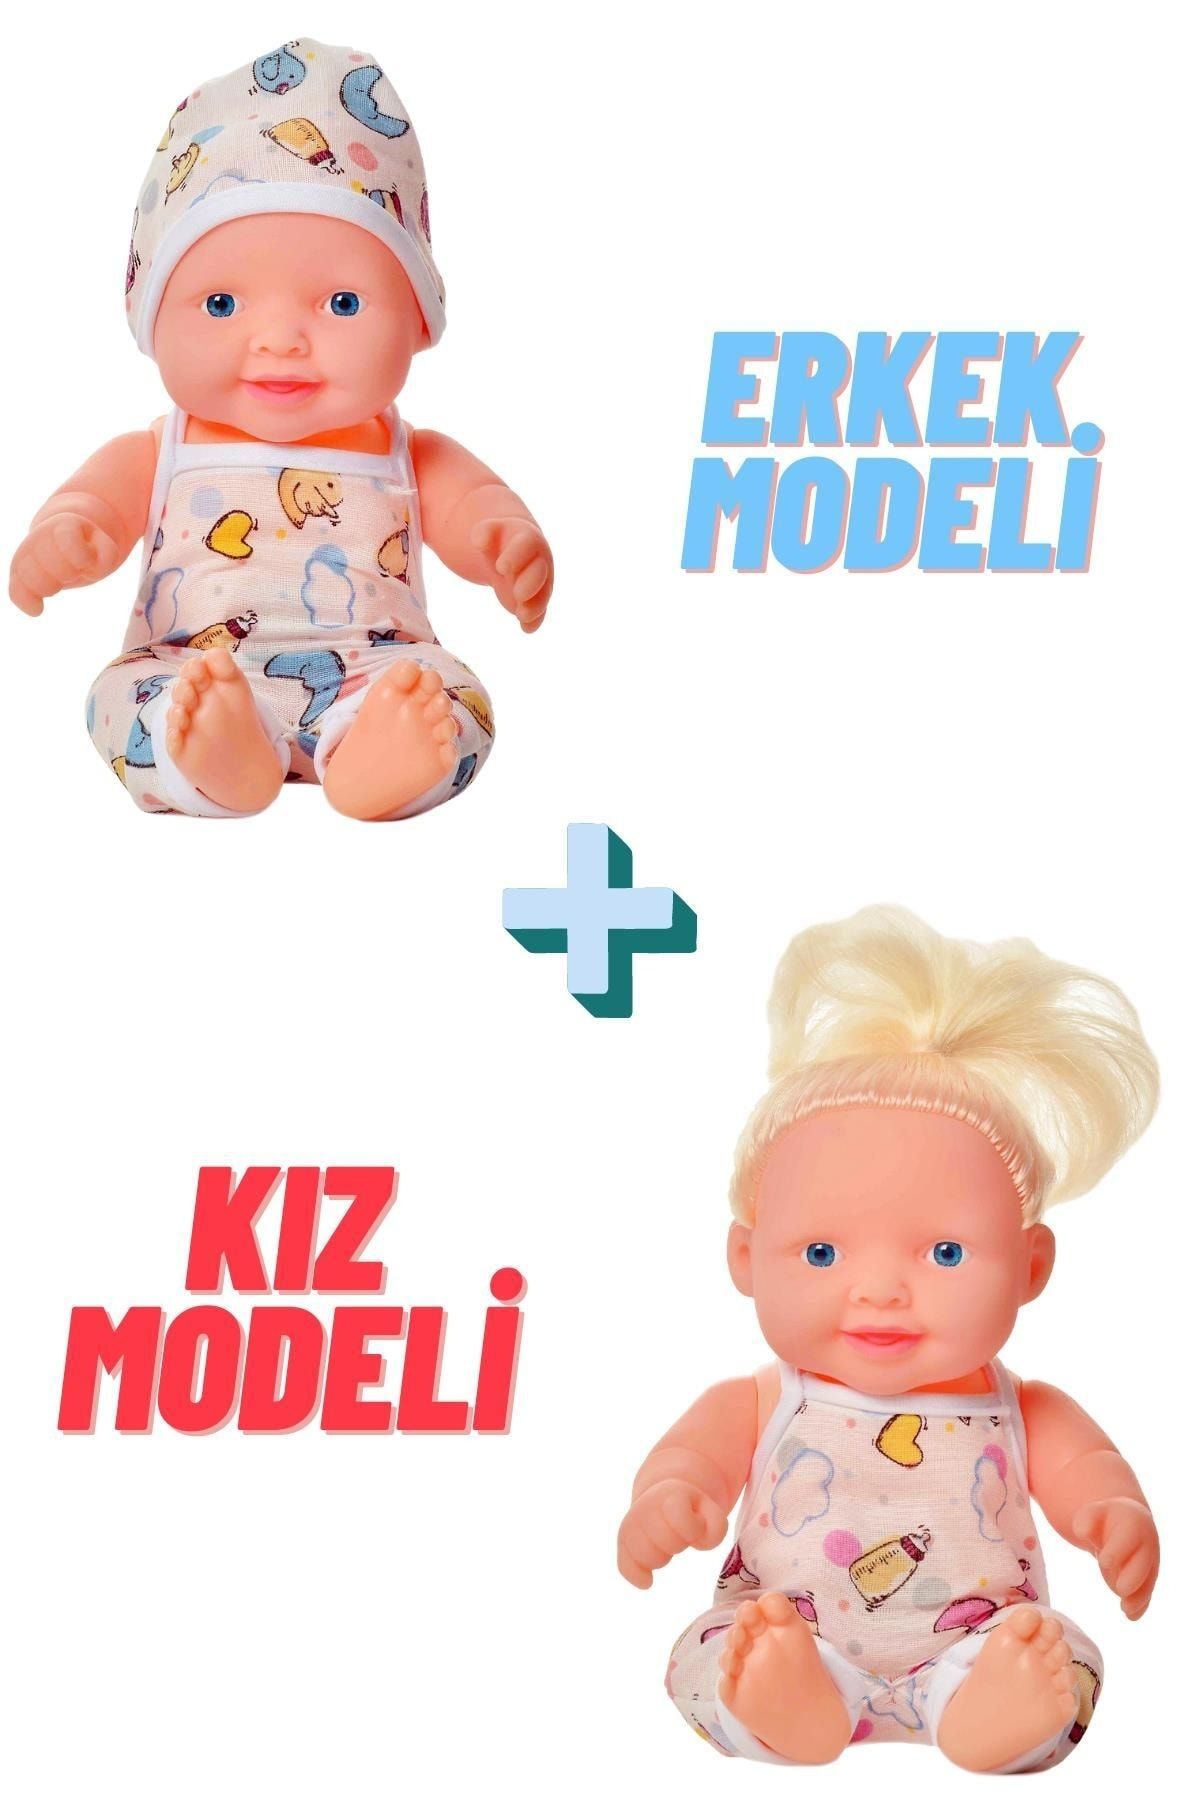 Global Toys Erkek Ve Kız Modelli 2 Adet Ingilizce Konuşan Ağlayan Et Bebek